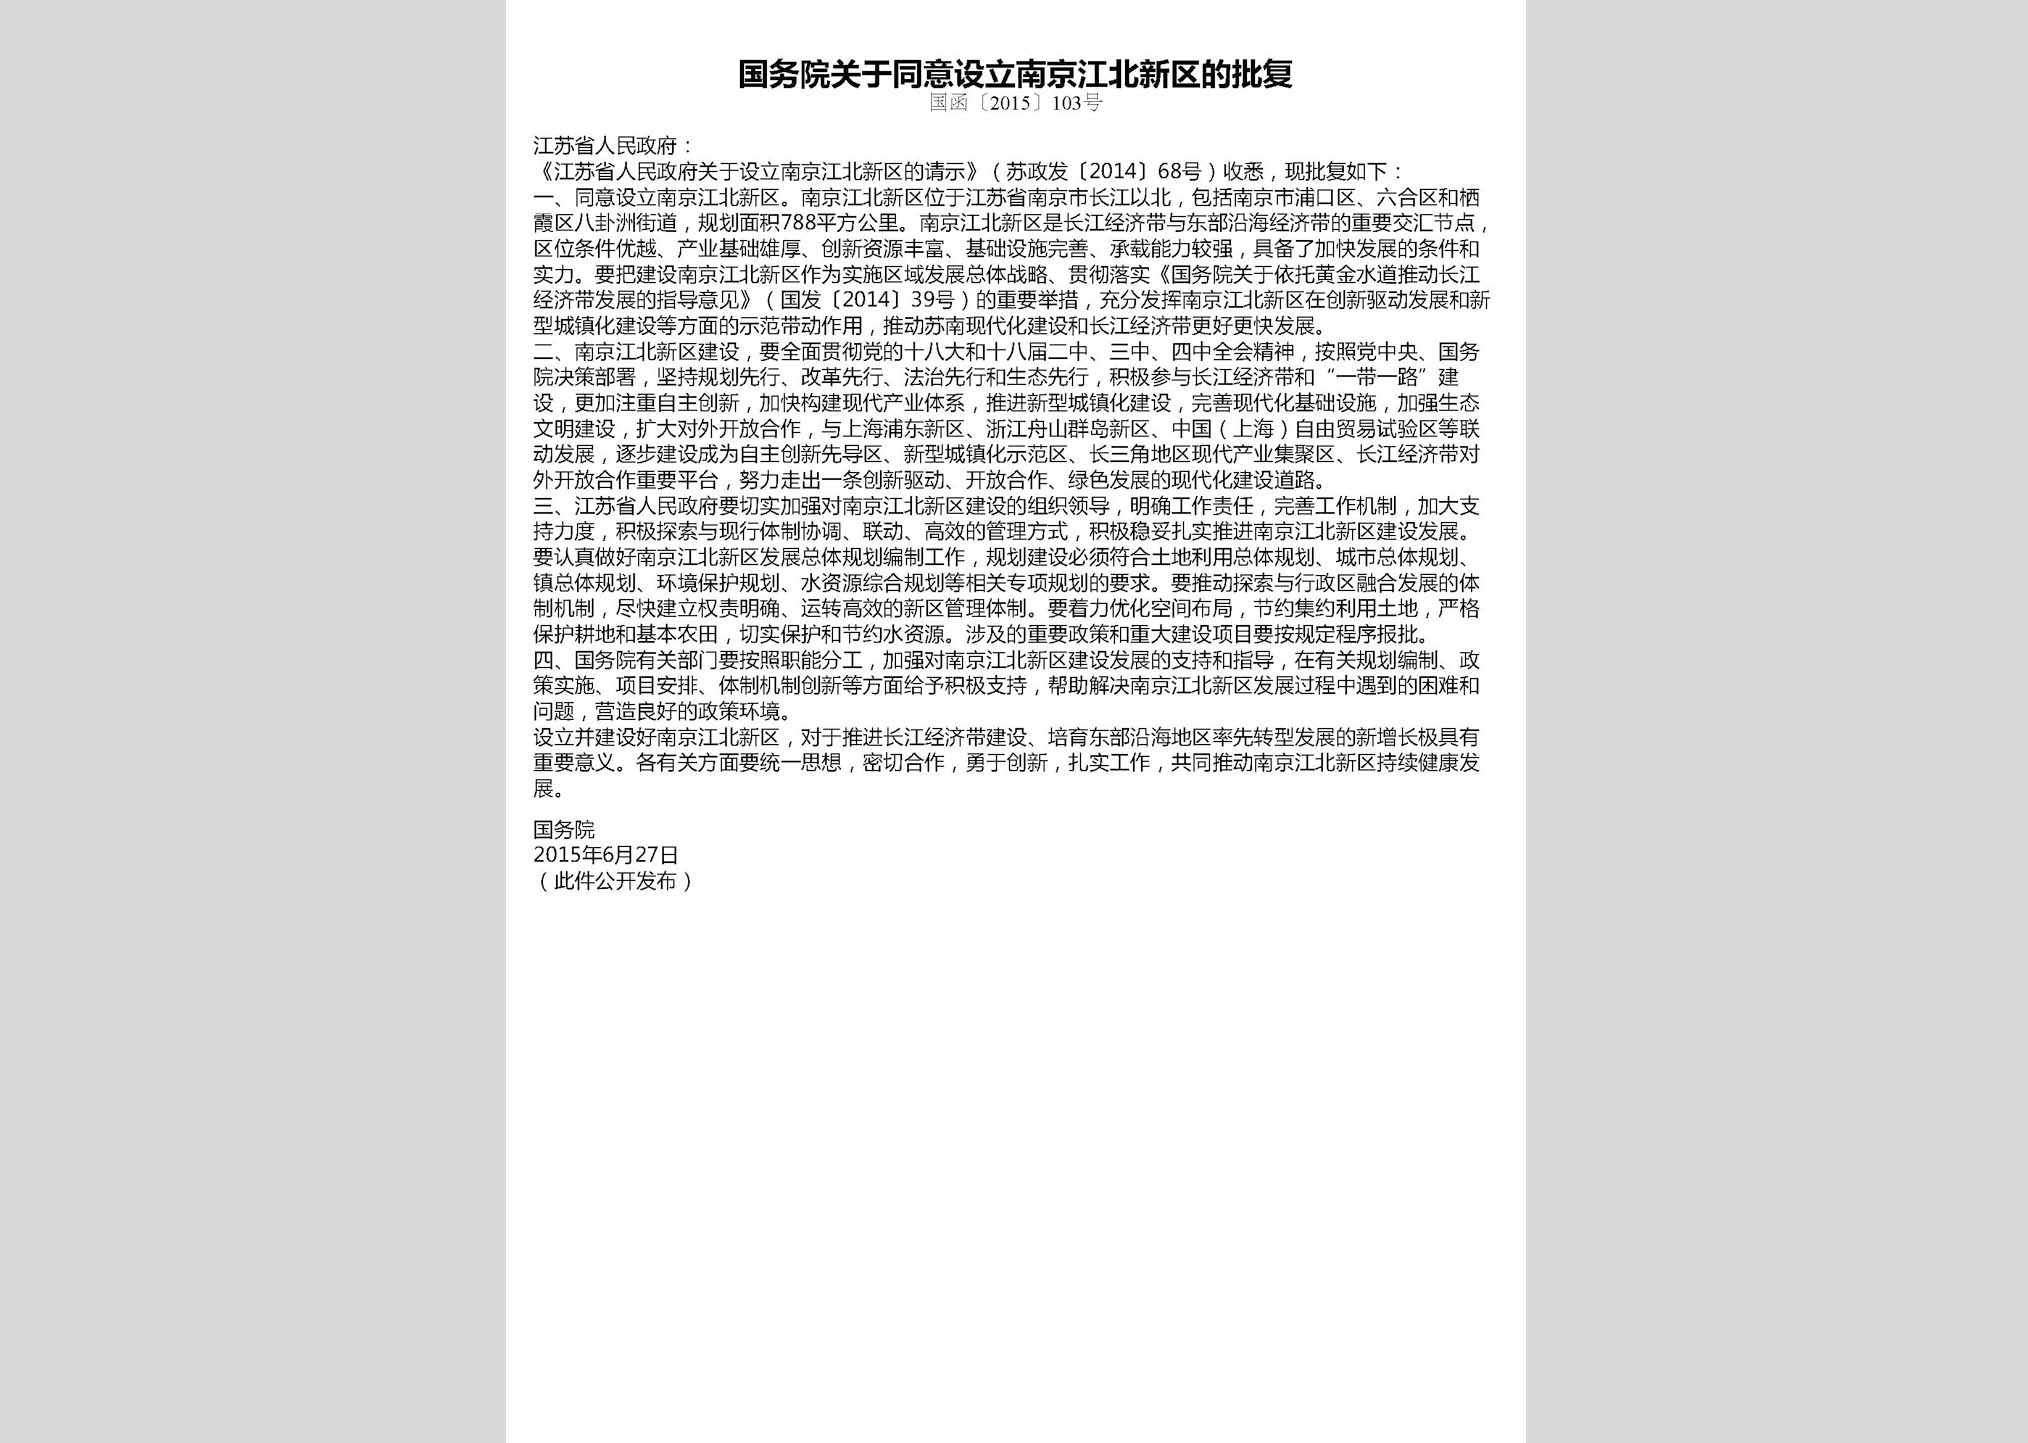 国函[2015]103号：国务院关于同意设立南京江北新区的批复